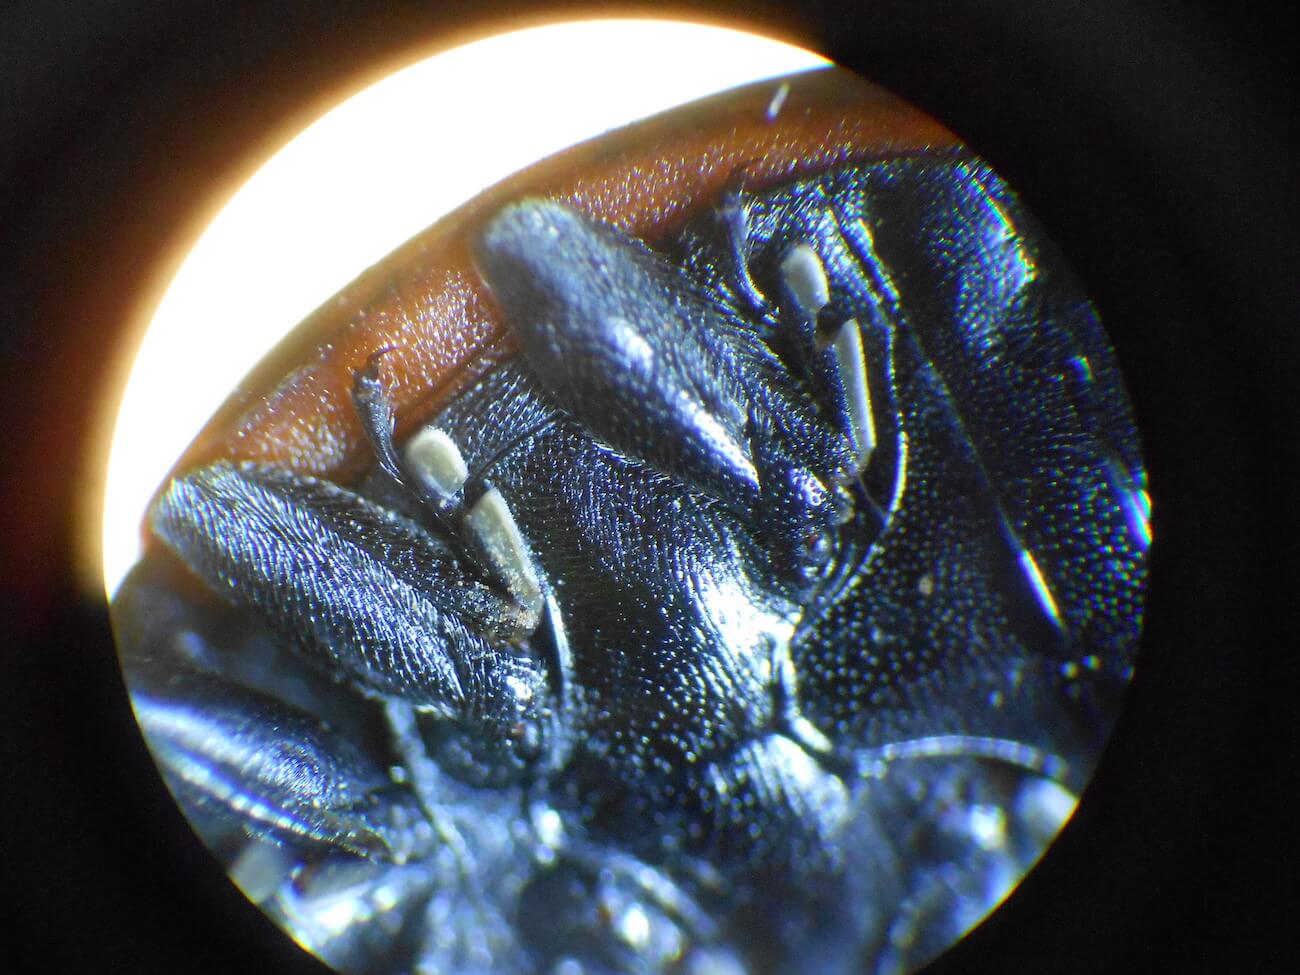 テントウムシの顕微鏡写真